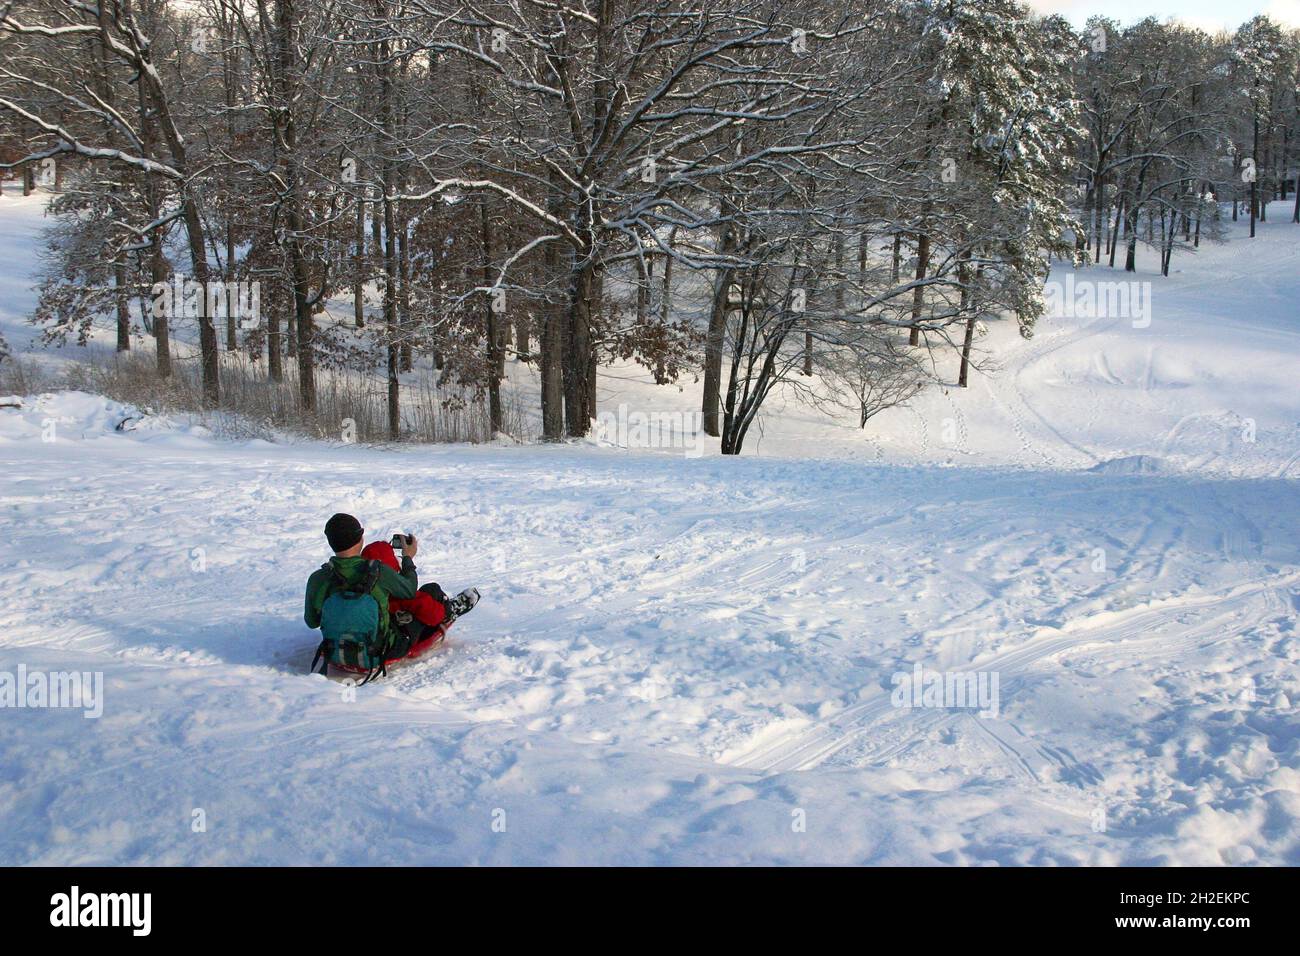 Ein Vater und ein Kind stapeln sich auf einen Plastikschlitten und machen ein Selfie, während sie im Winter einen verschneiten Hügel hinuntergleiten Stockfoto